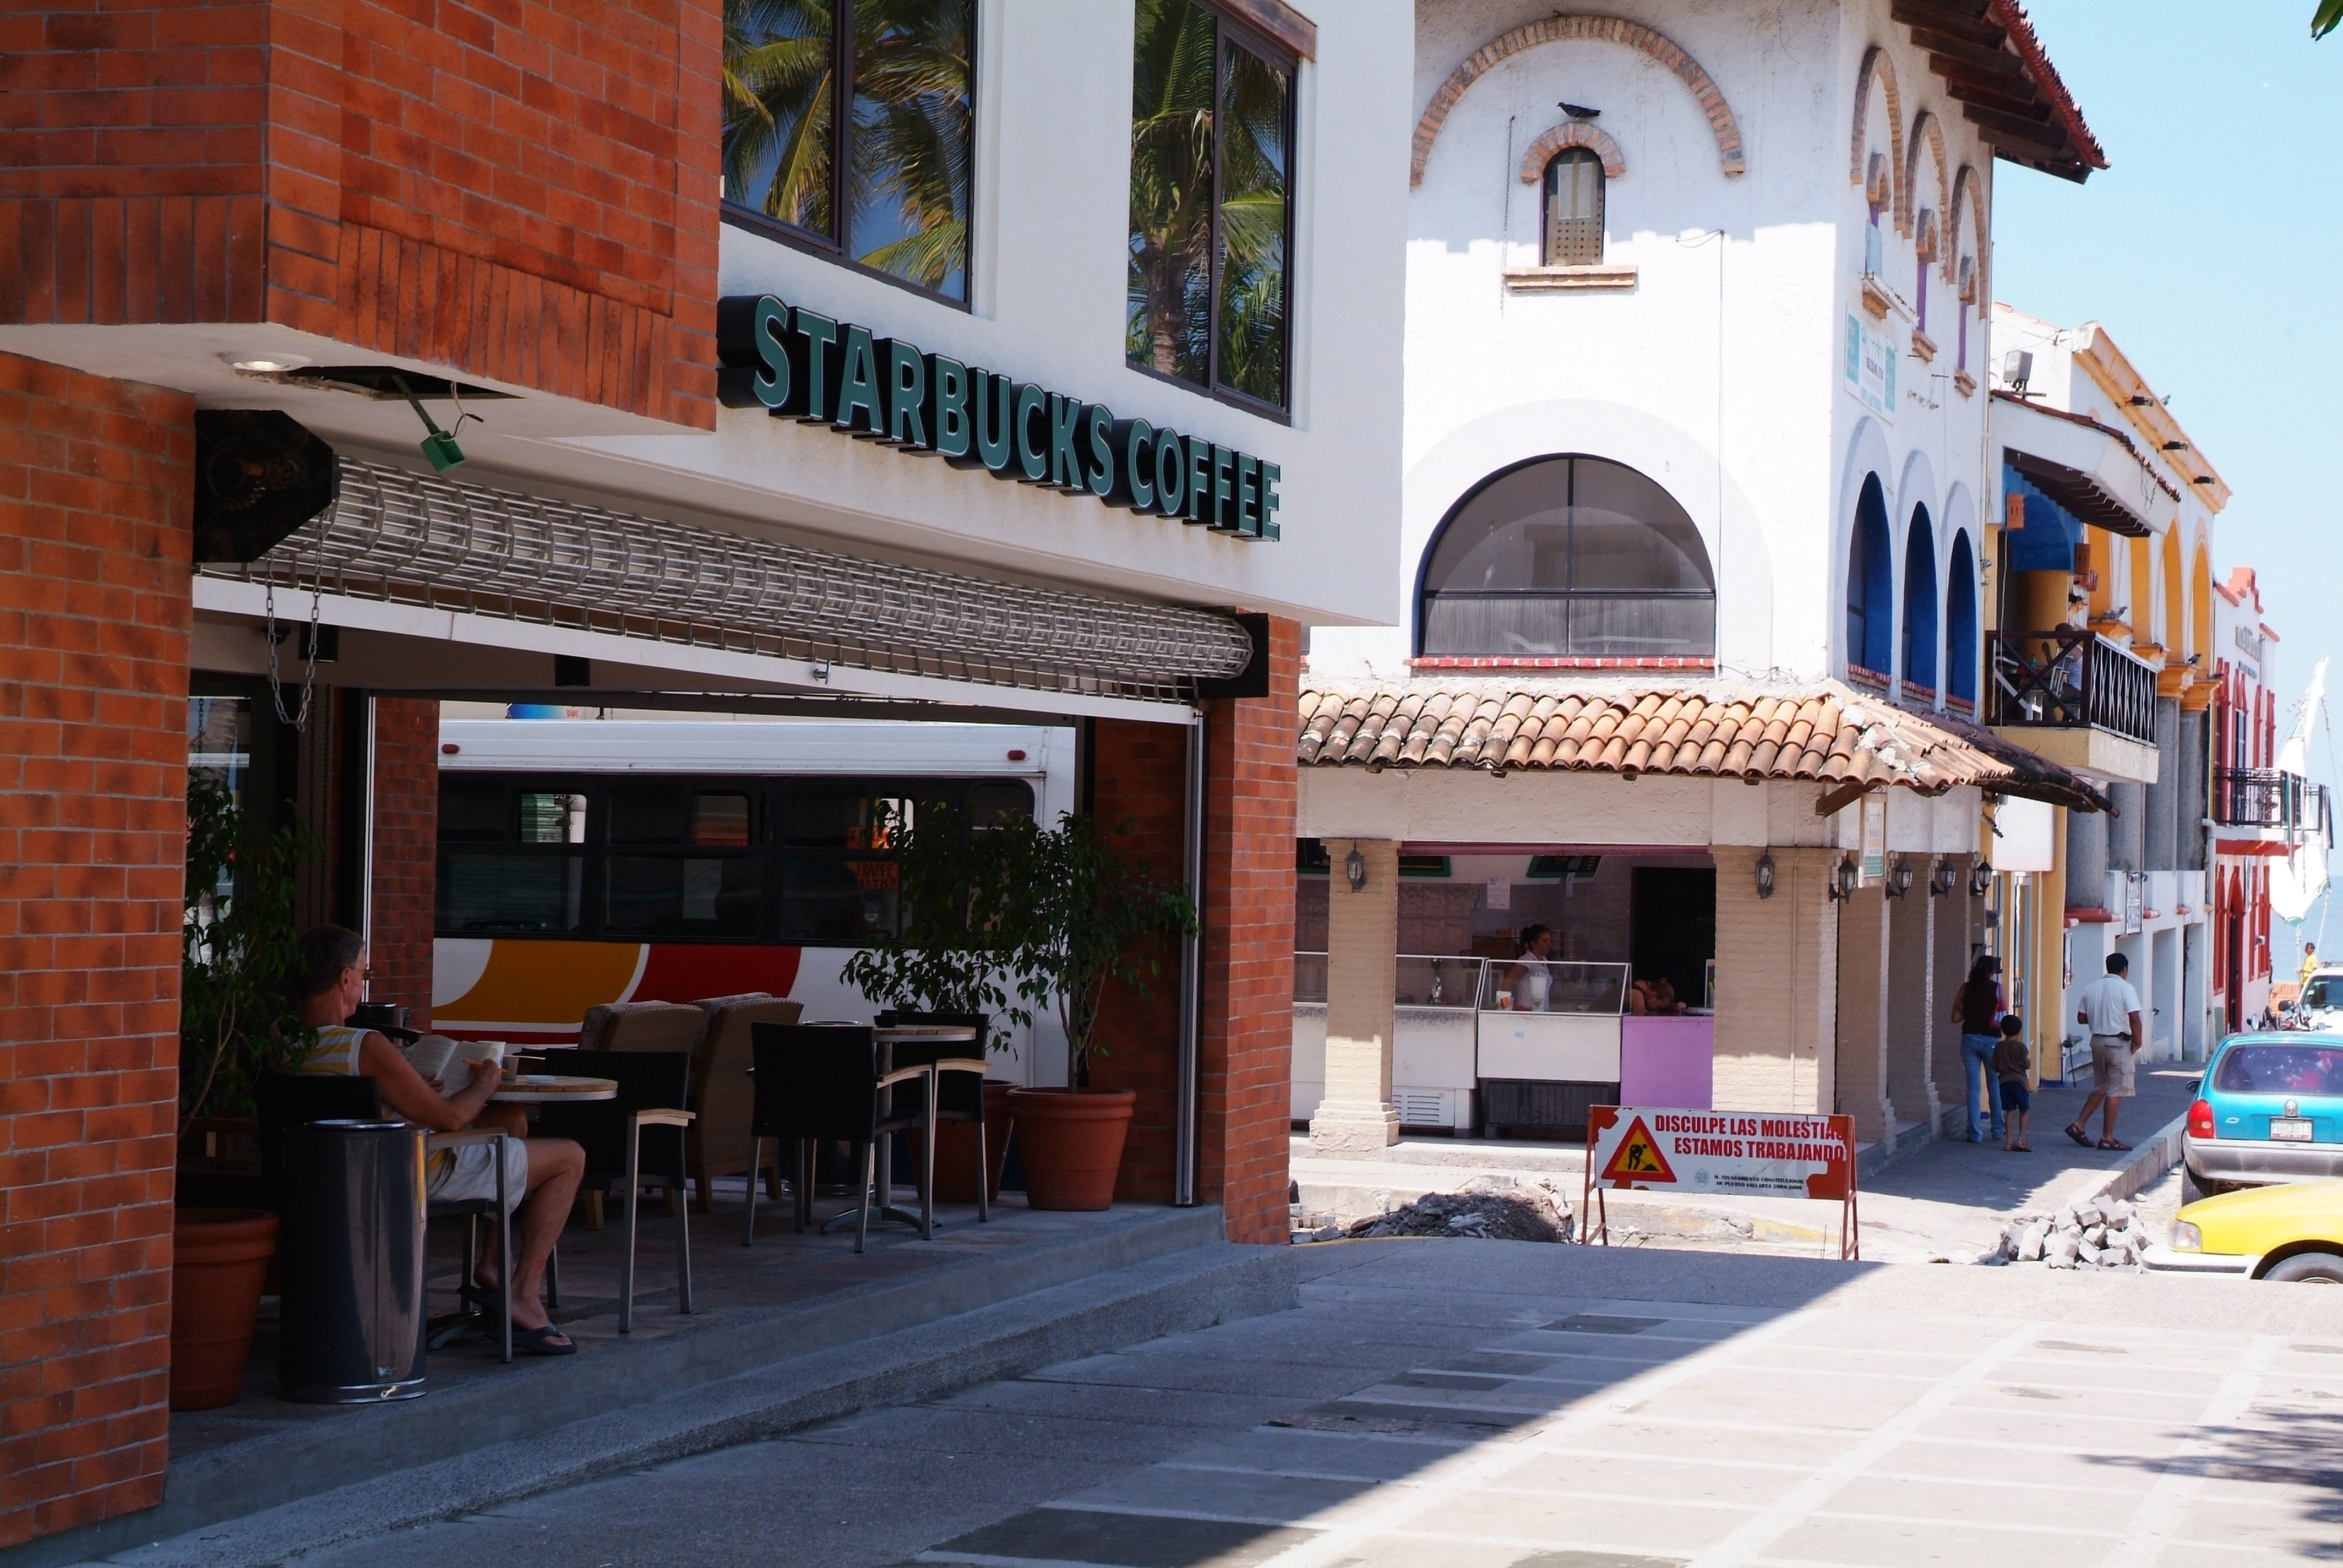 Starbucks Coffee Shop in Puerto Vallarta, Mexico